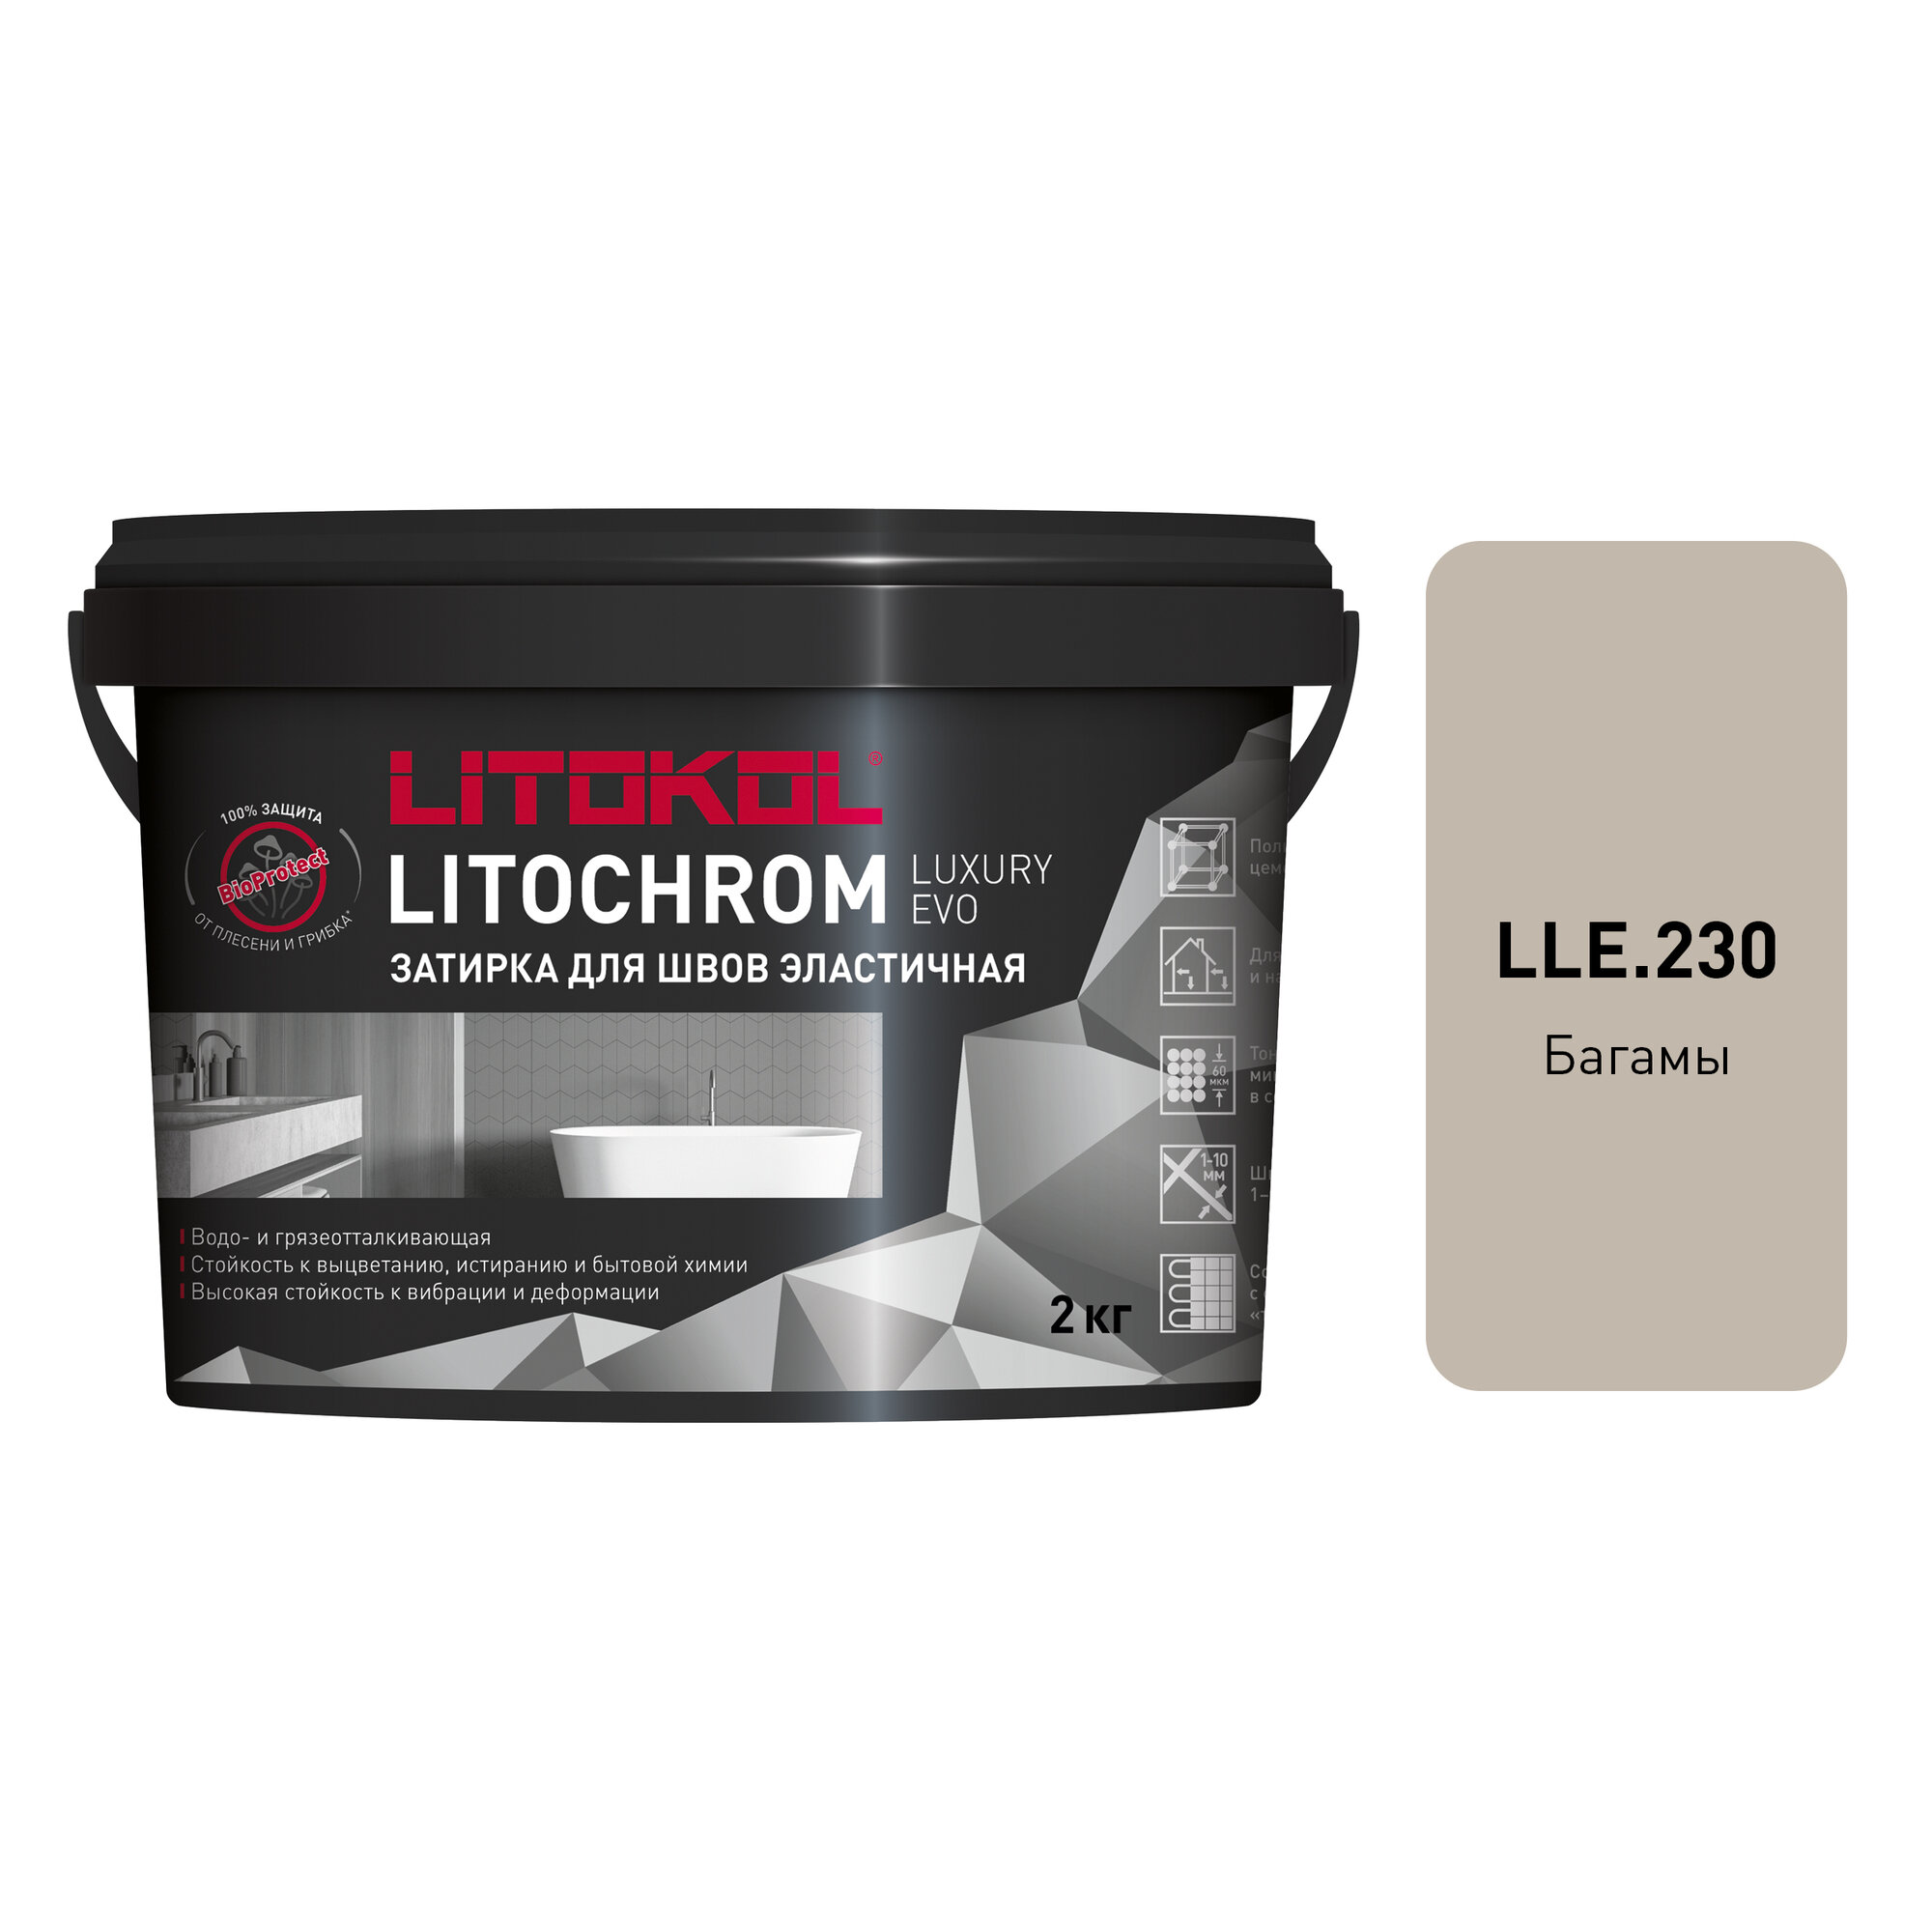 Затирка цементная LITOKOL LITOCHROM LUXURY EVO LLE 230, цвет багамы, 2 кг